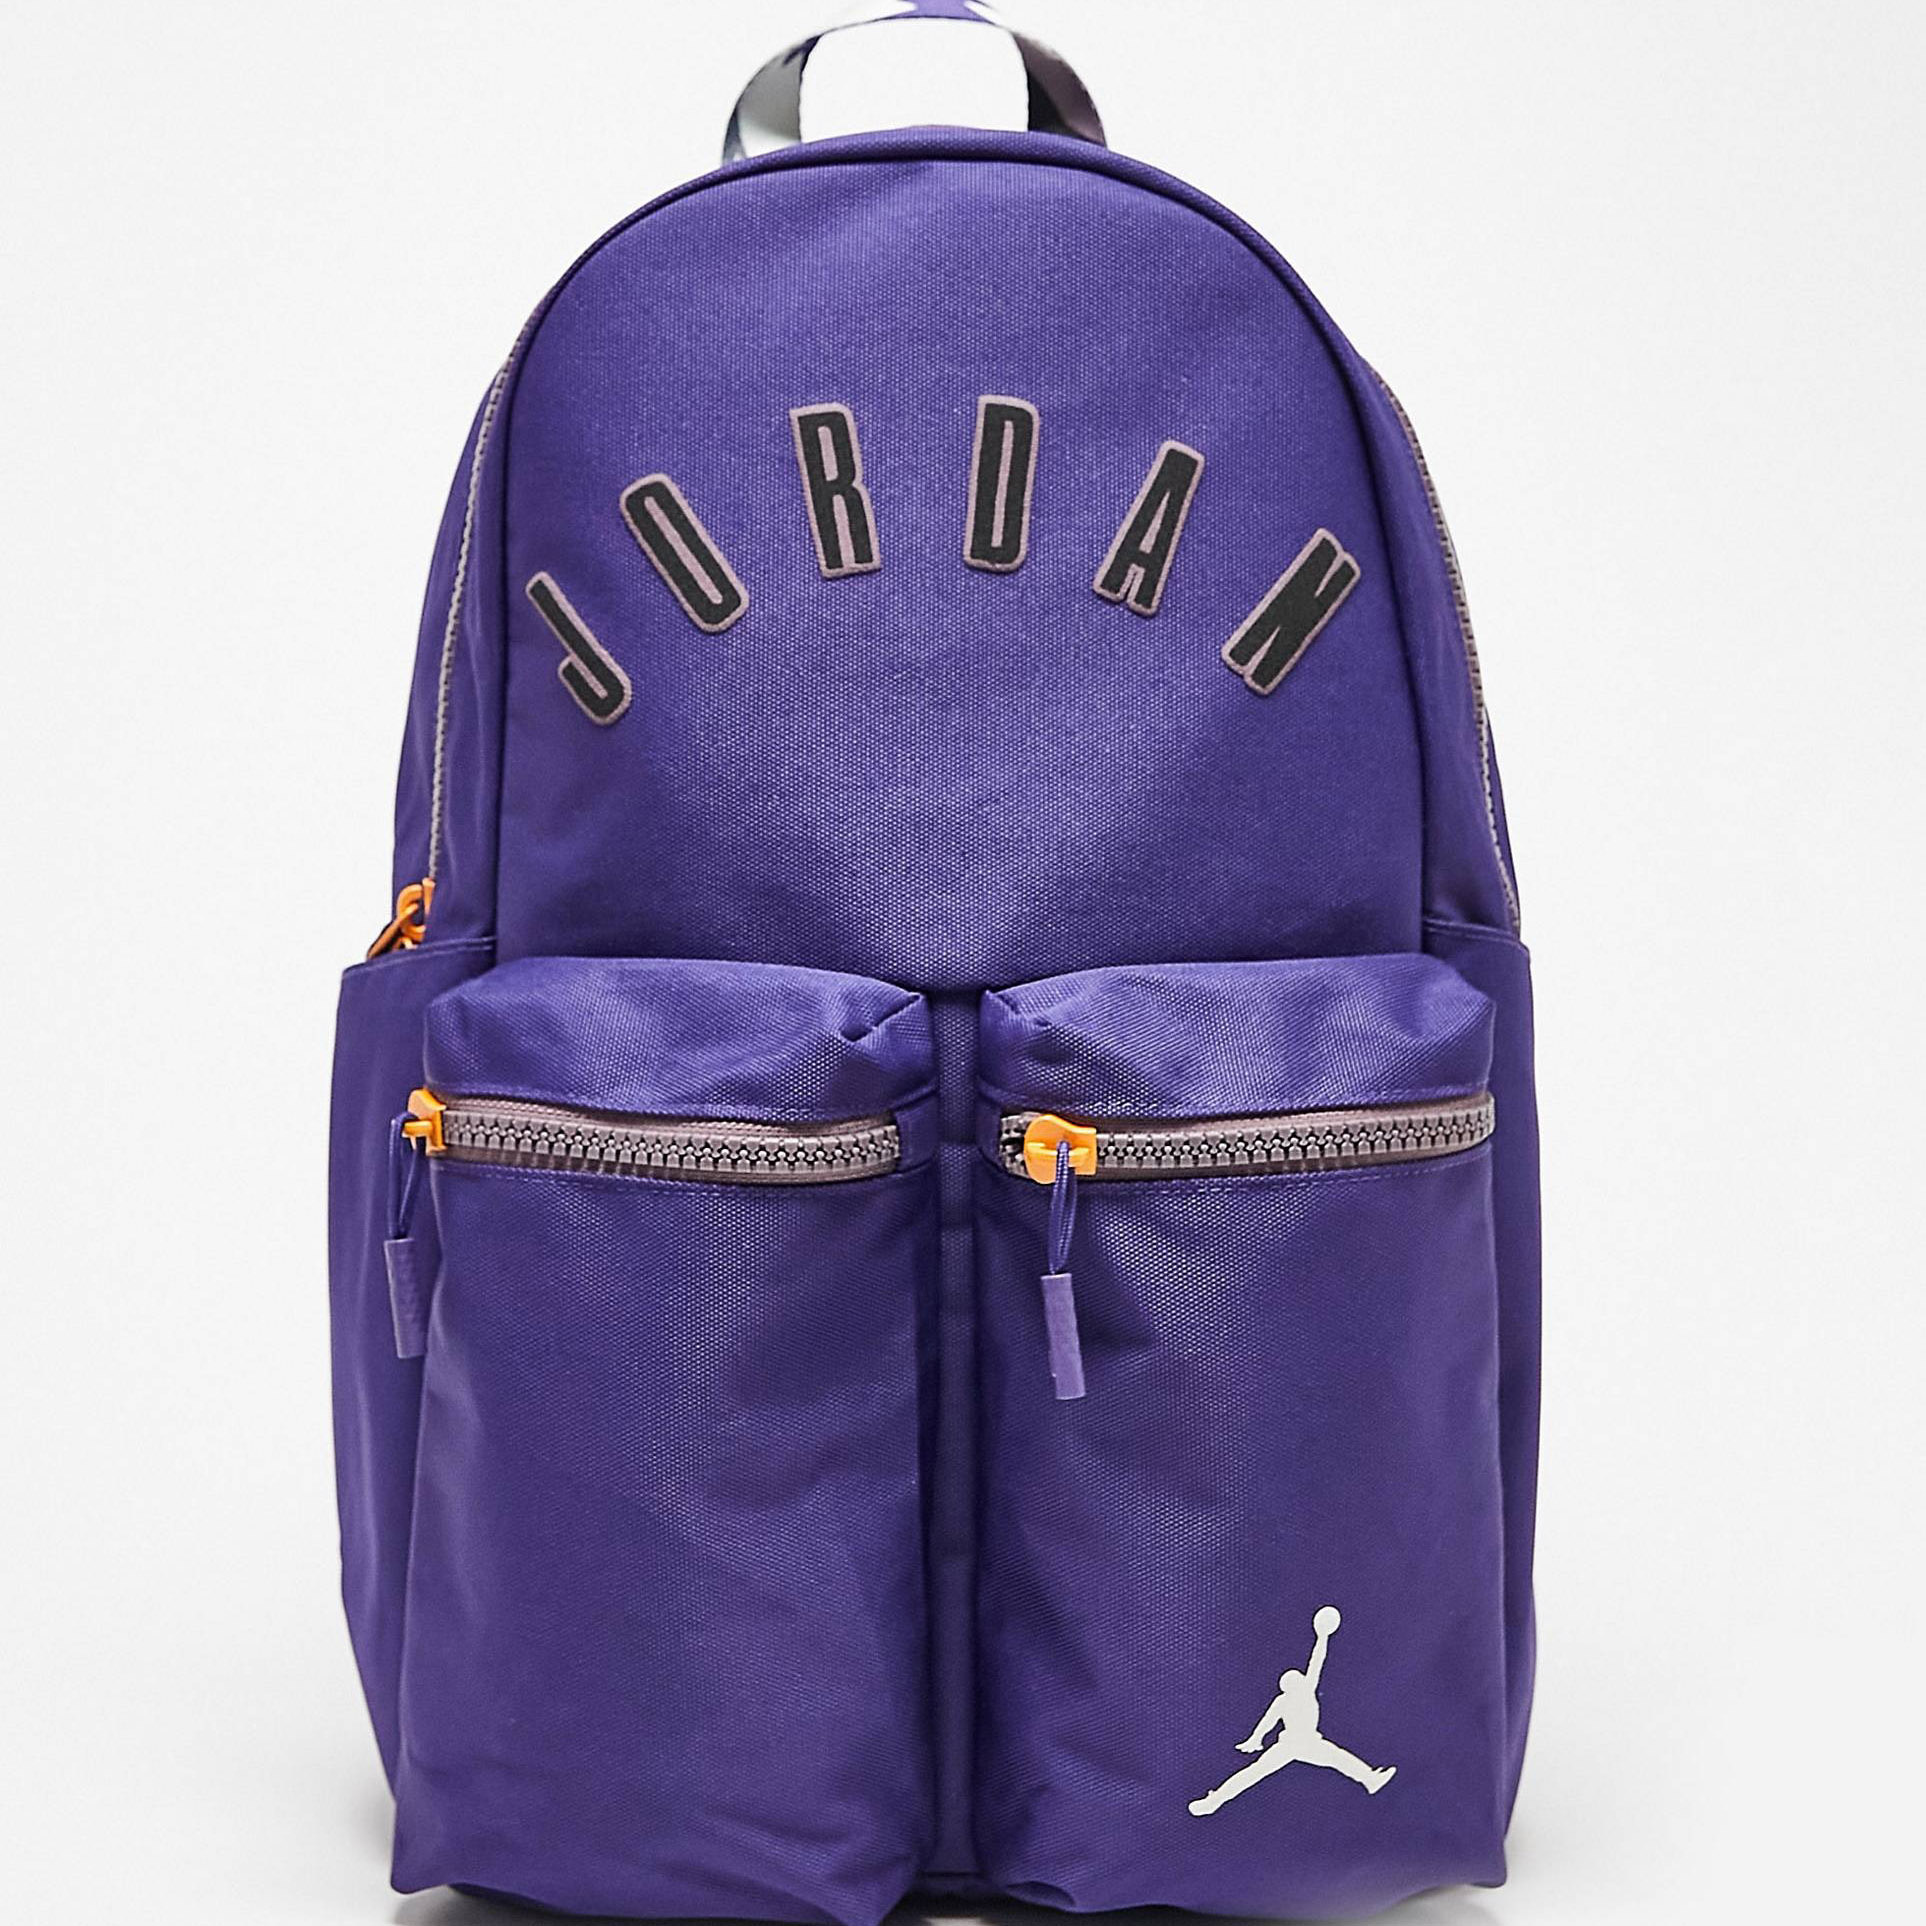 Рюкзак Nike Jordan MPV, фиолетовый футболка nike jordan essentials темно бордовый желтый